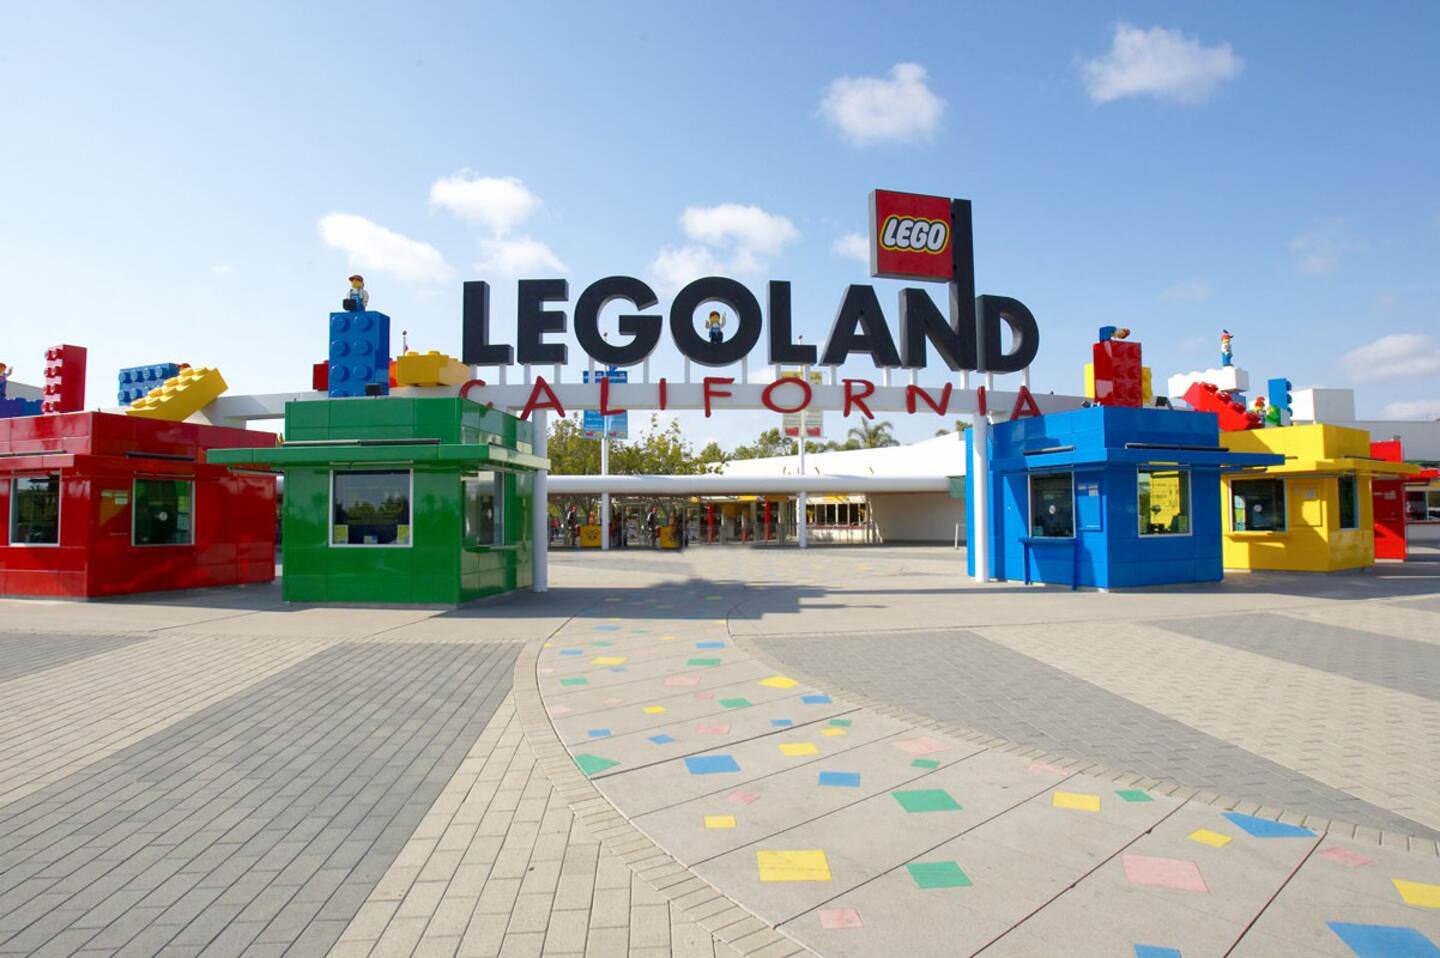 Close to Legoland